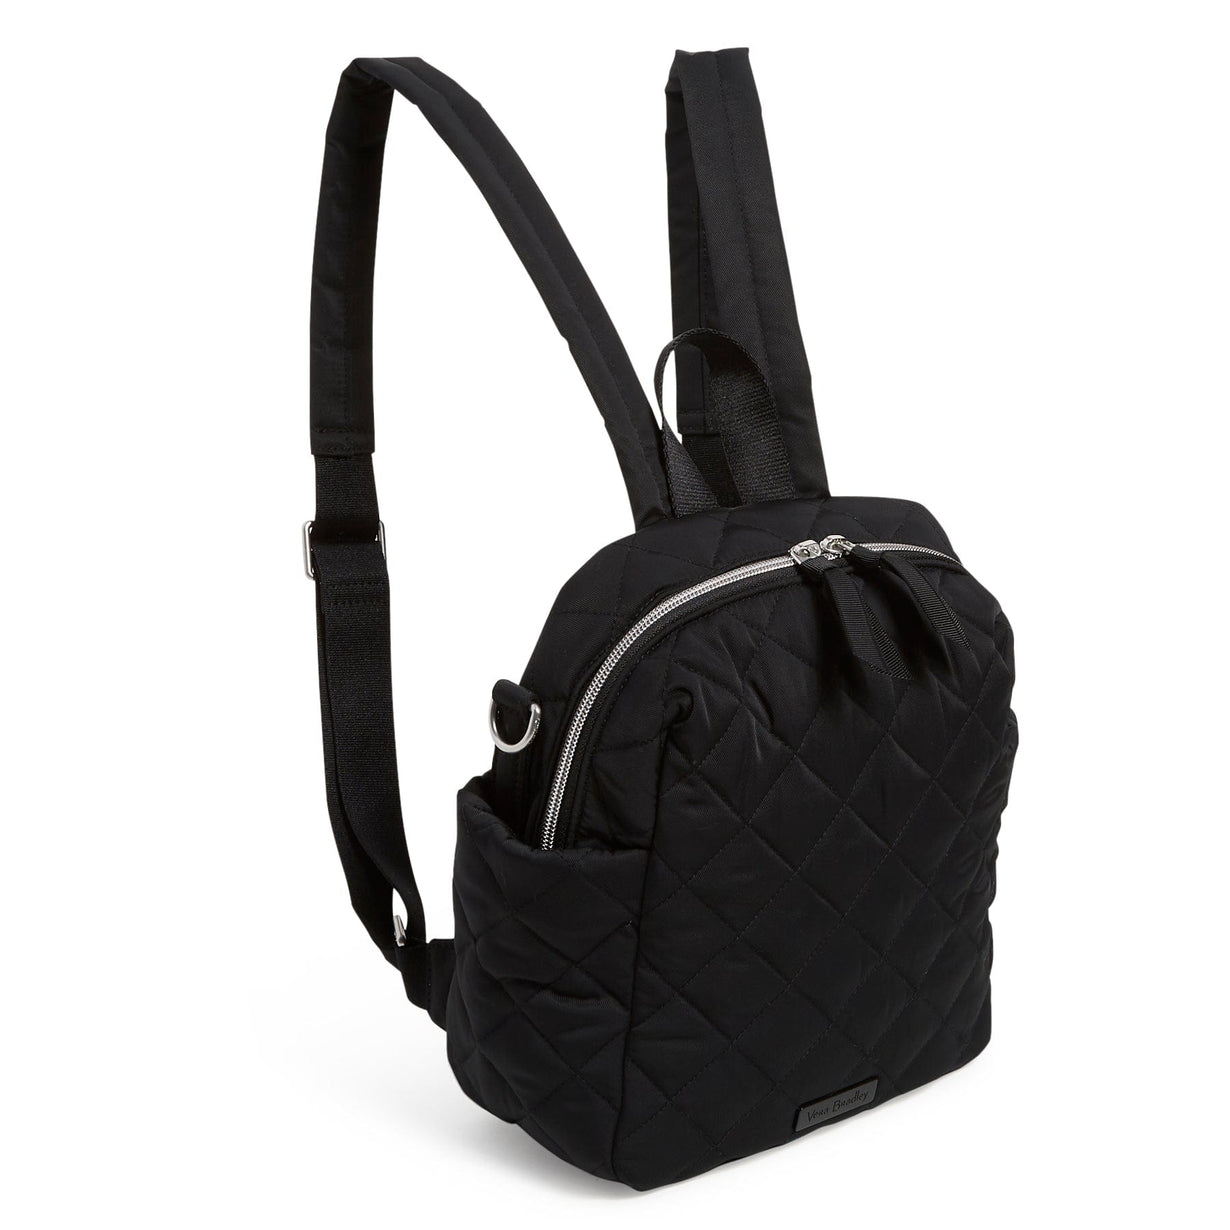 BohoBuzz Backpack Purse for Women Convertible Travel Vintage PU Leather  Shoulder Bag 25 L Backpack Grey - Price in India | Flipkart.com